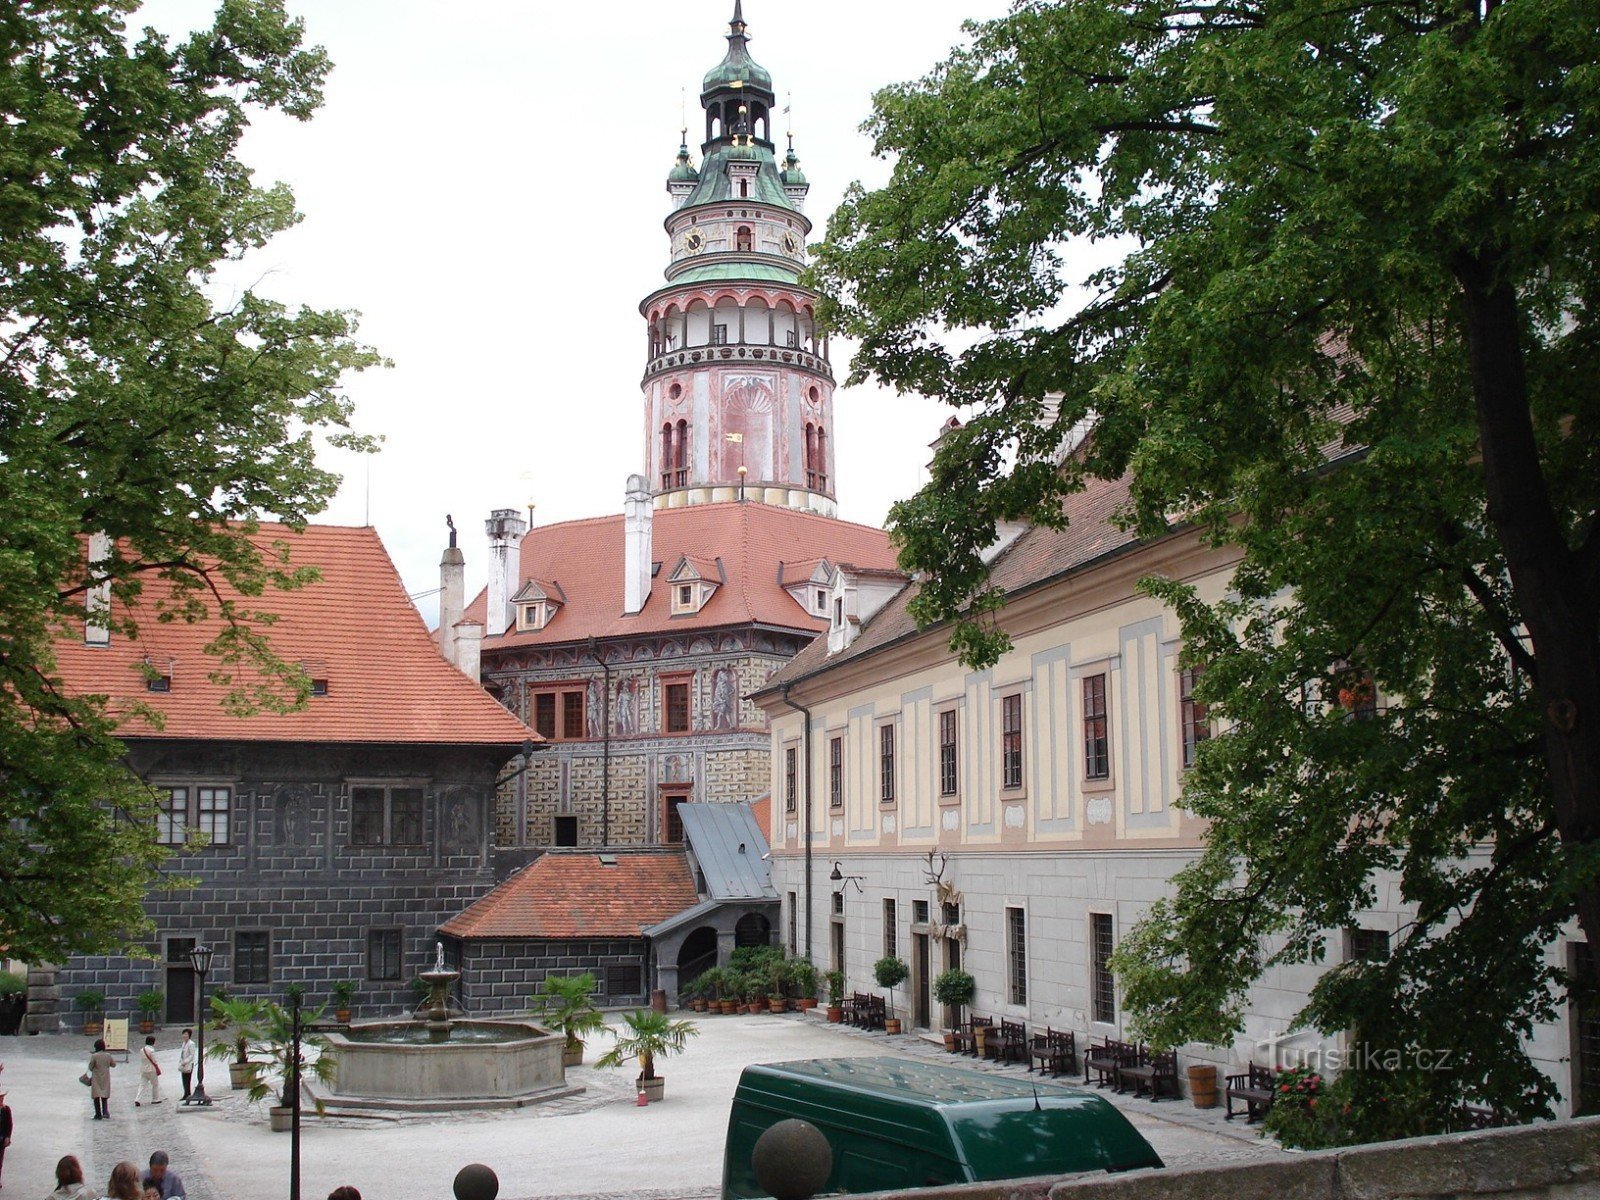 Castelul Český Krumlov